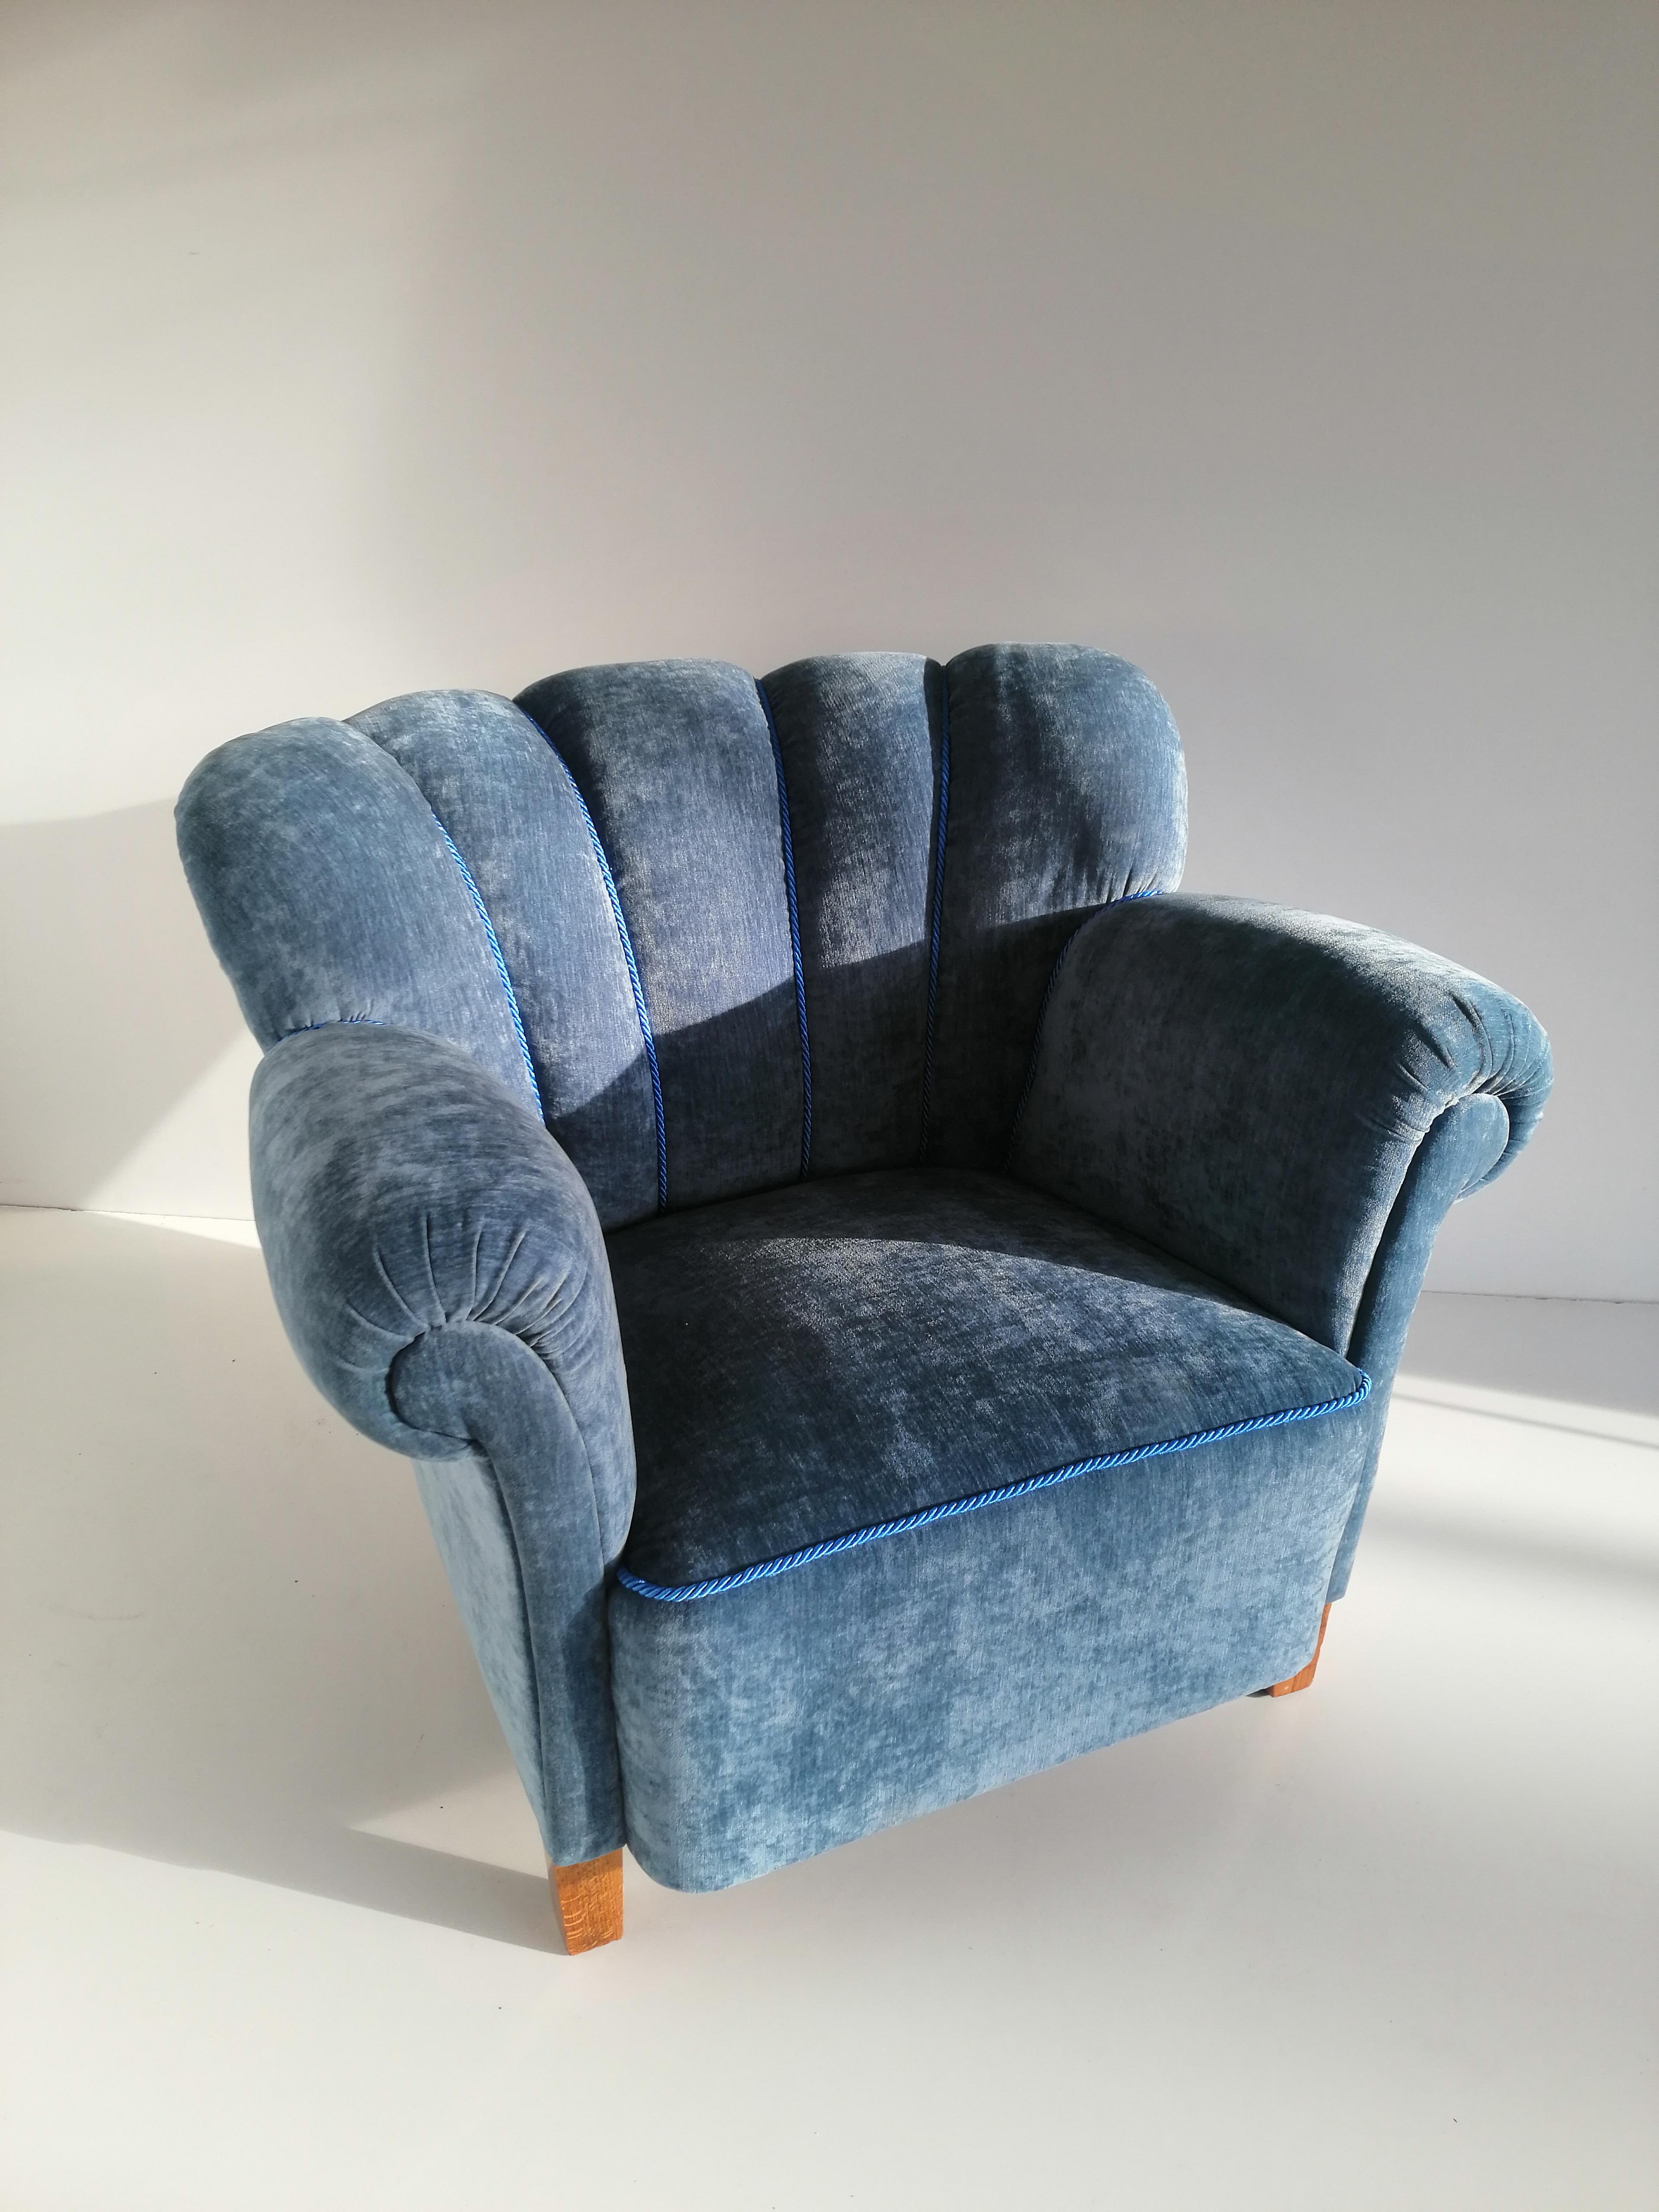 1940 armchair